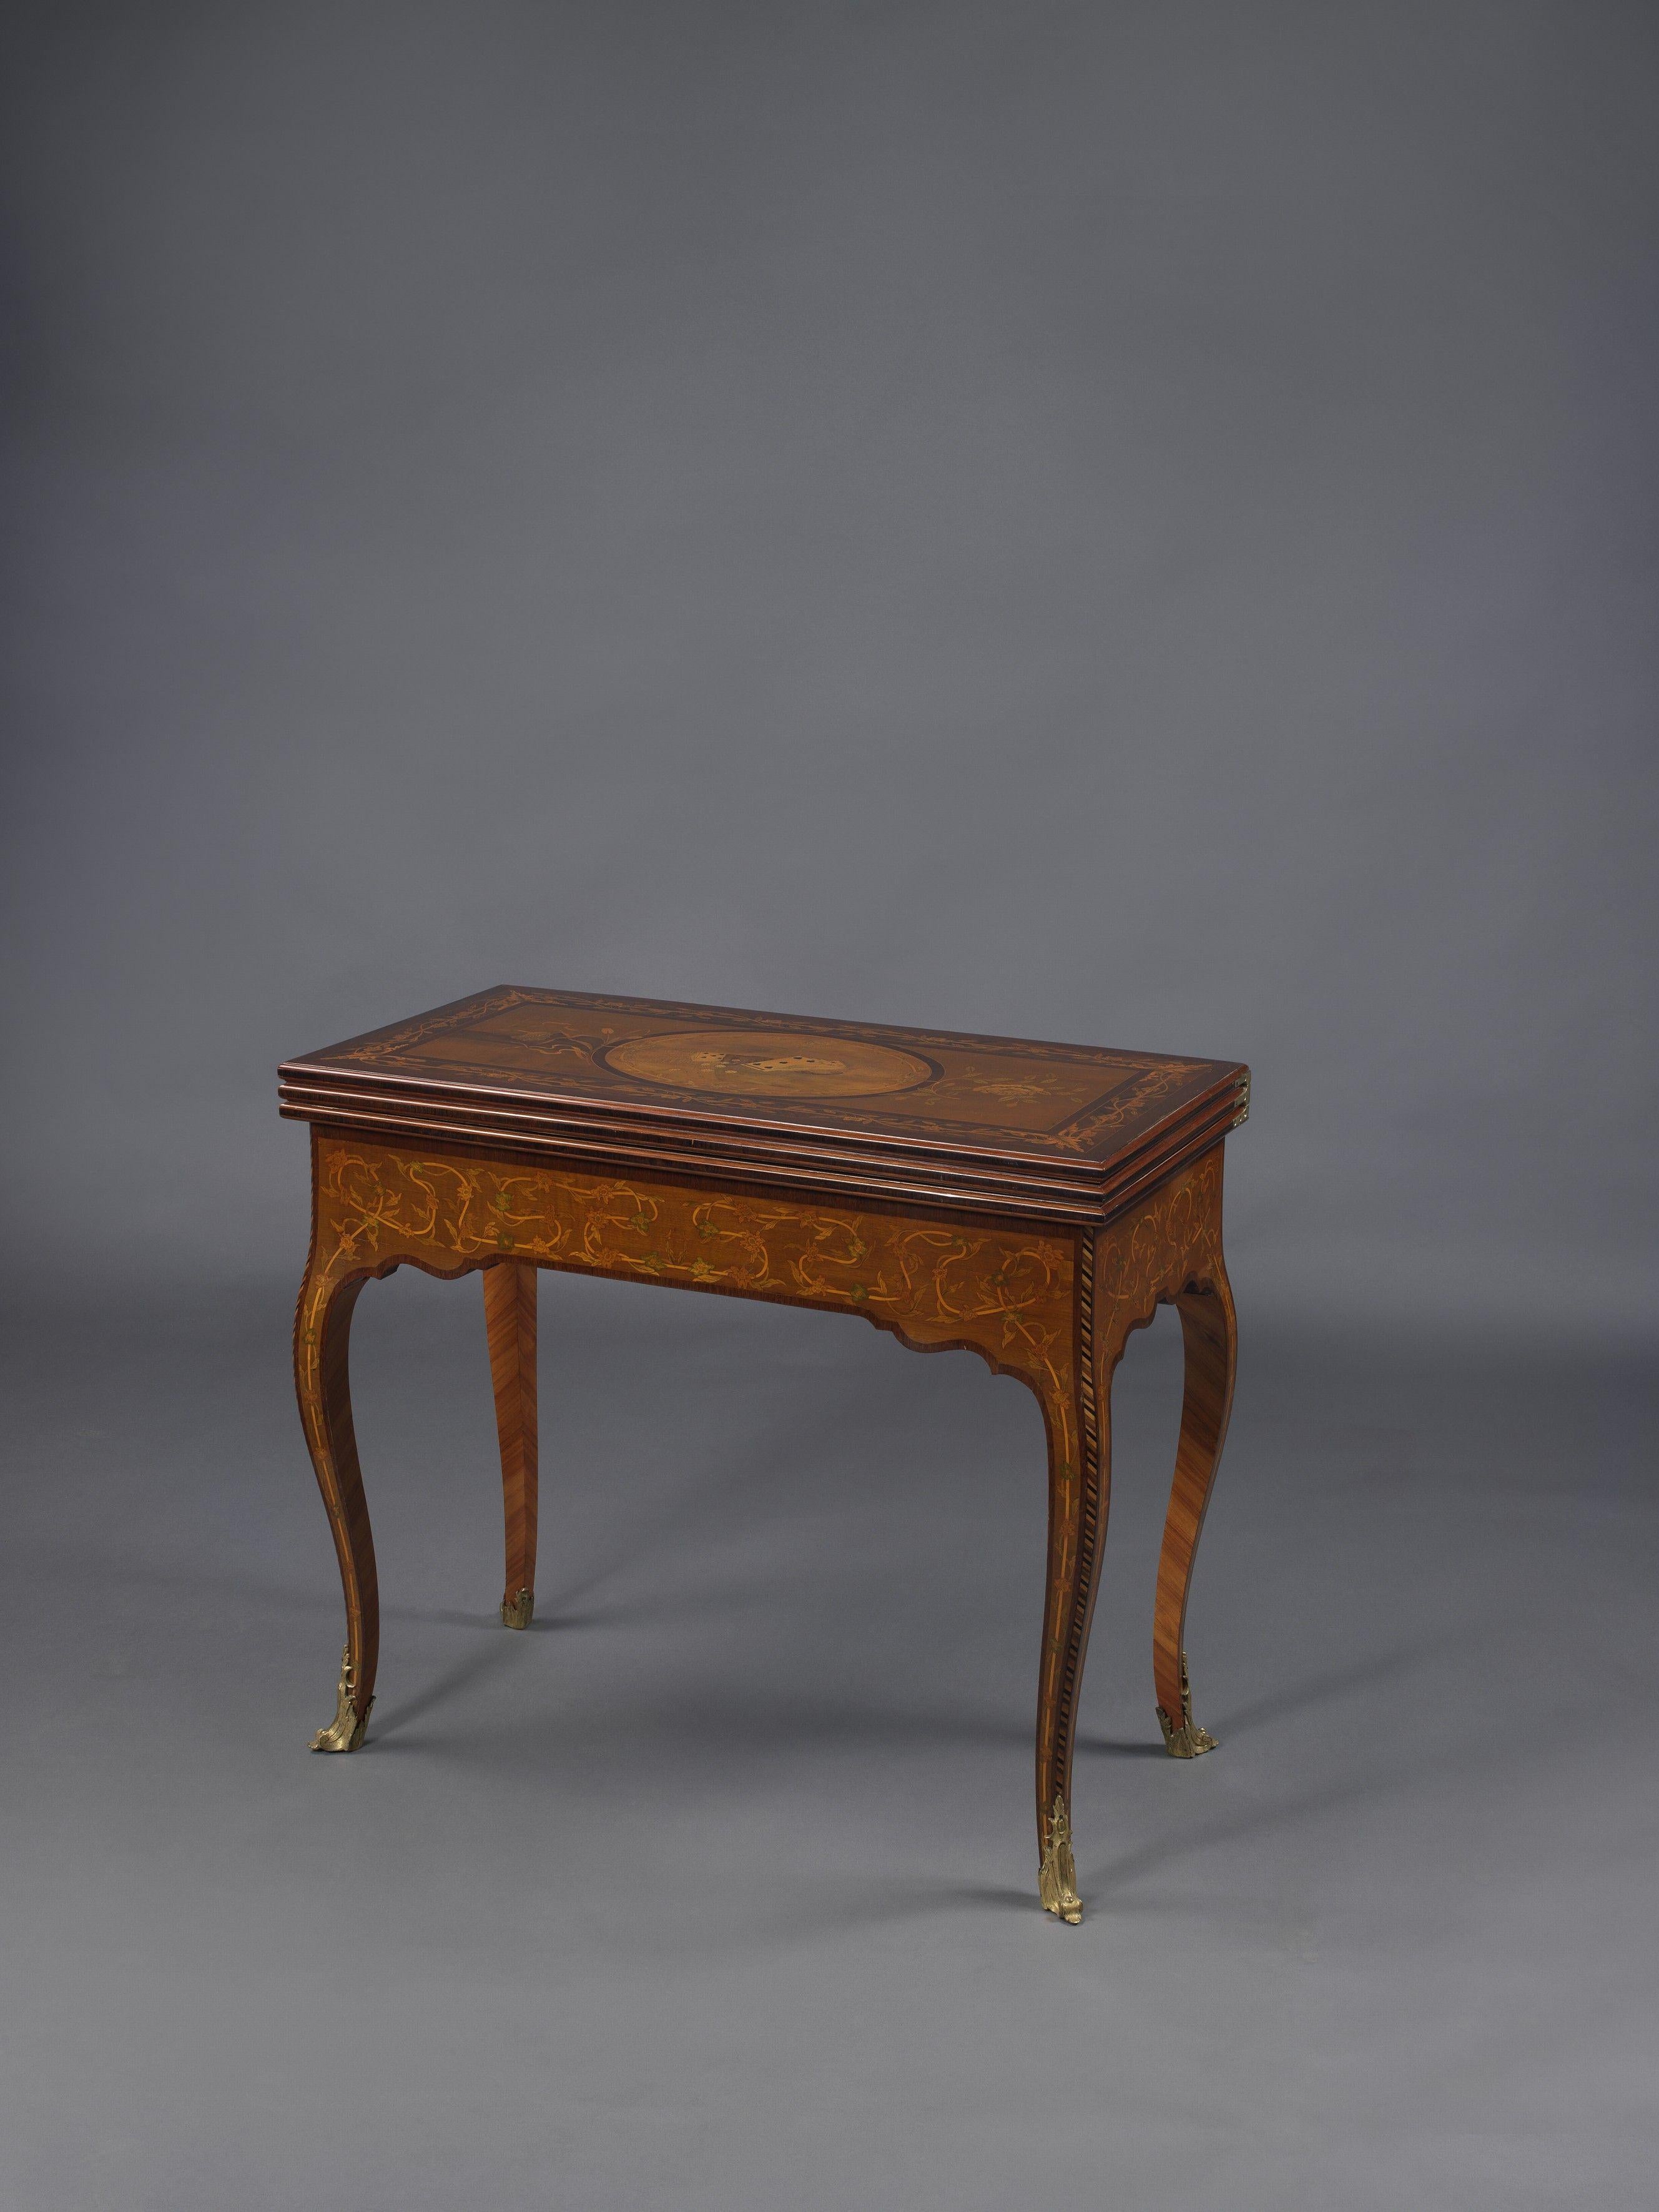 Ein seltener und höchst bedeutender, dreifach drehbarer Spieltisch aus der russischen Kaiserzeit mit Goldbronze und Intarsieneinlagen.
 
St. Petersburg, um 1820.

Dieser seltene und elegante Spieltisch mit Intarsien, auch Lomberian genannt, ist